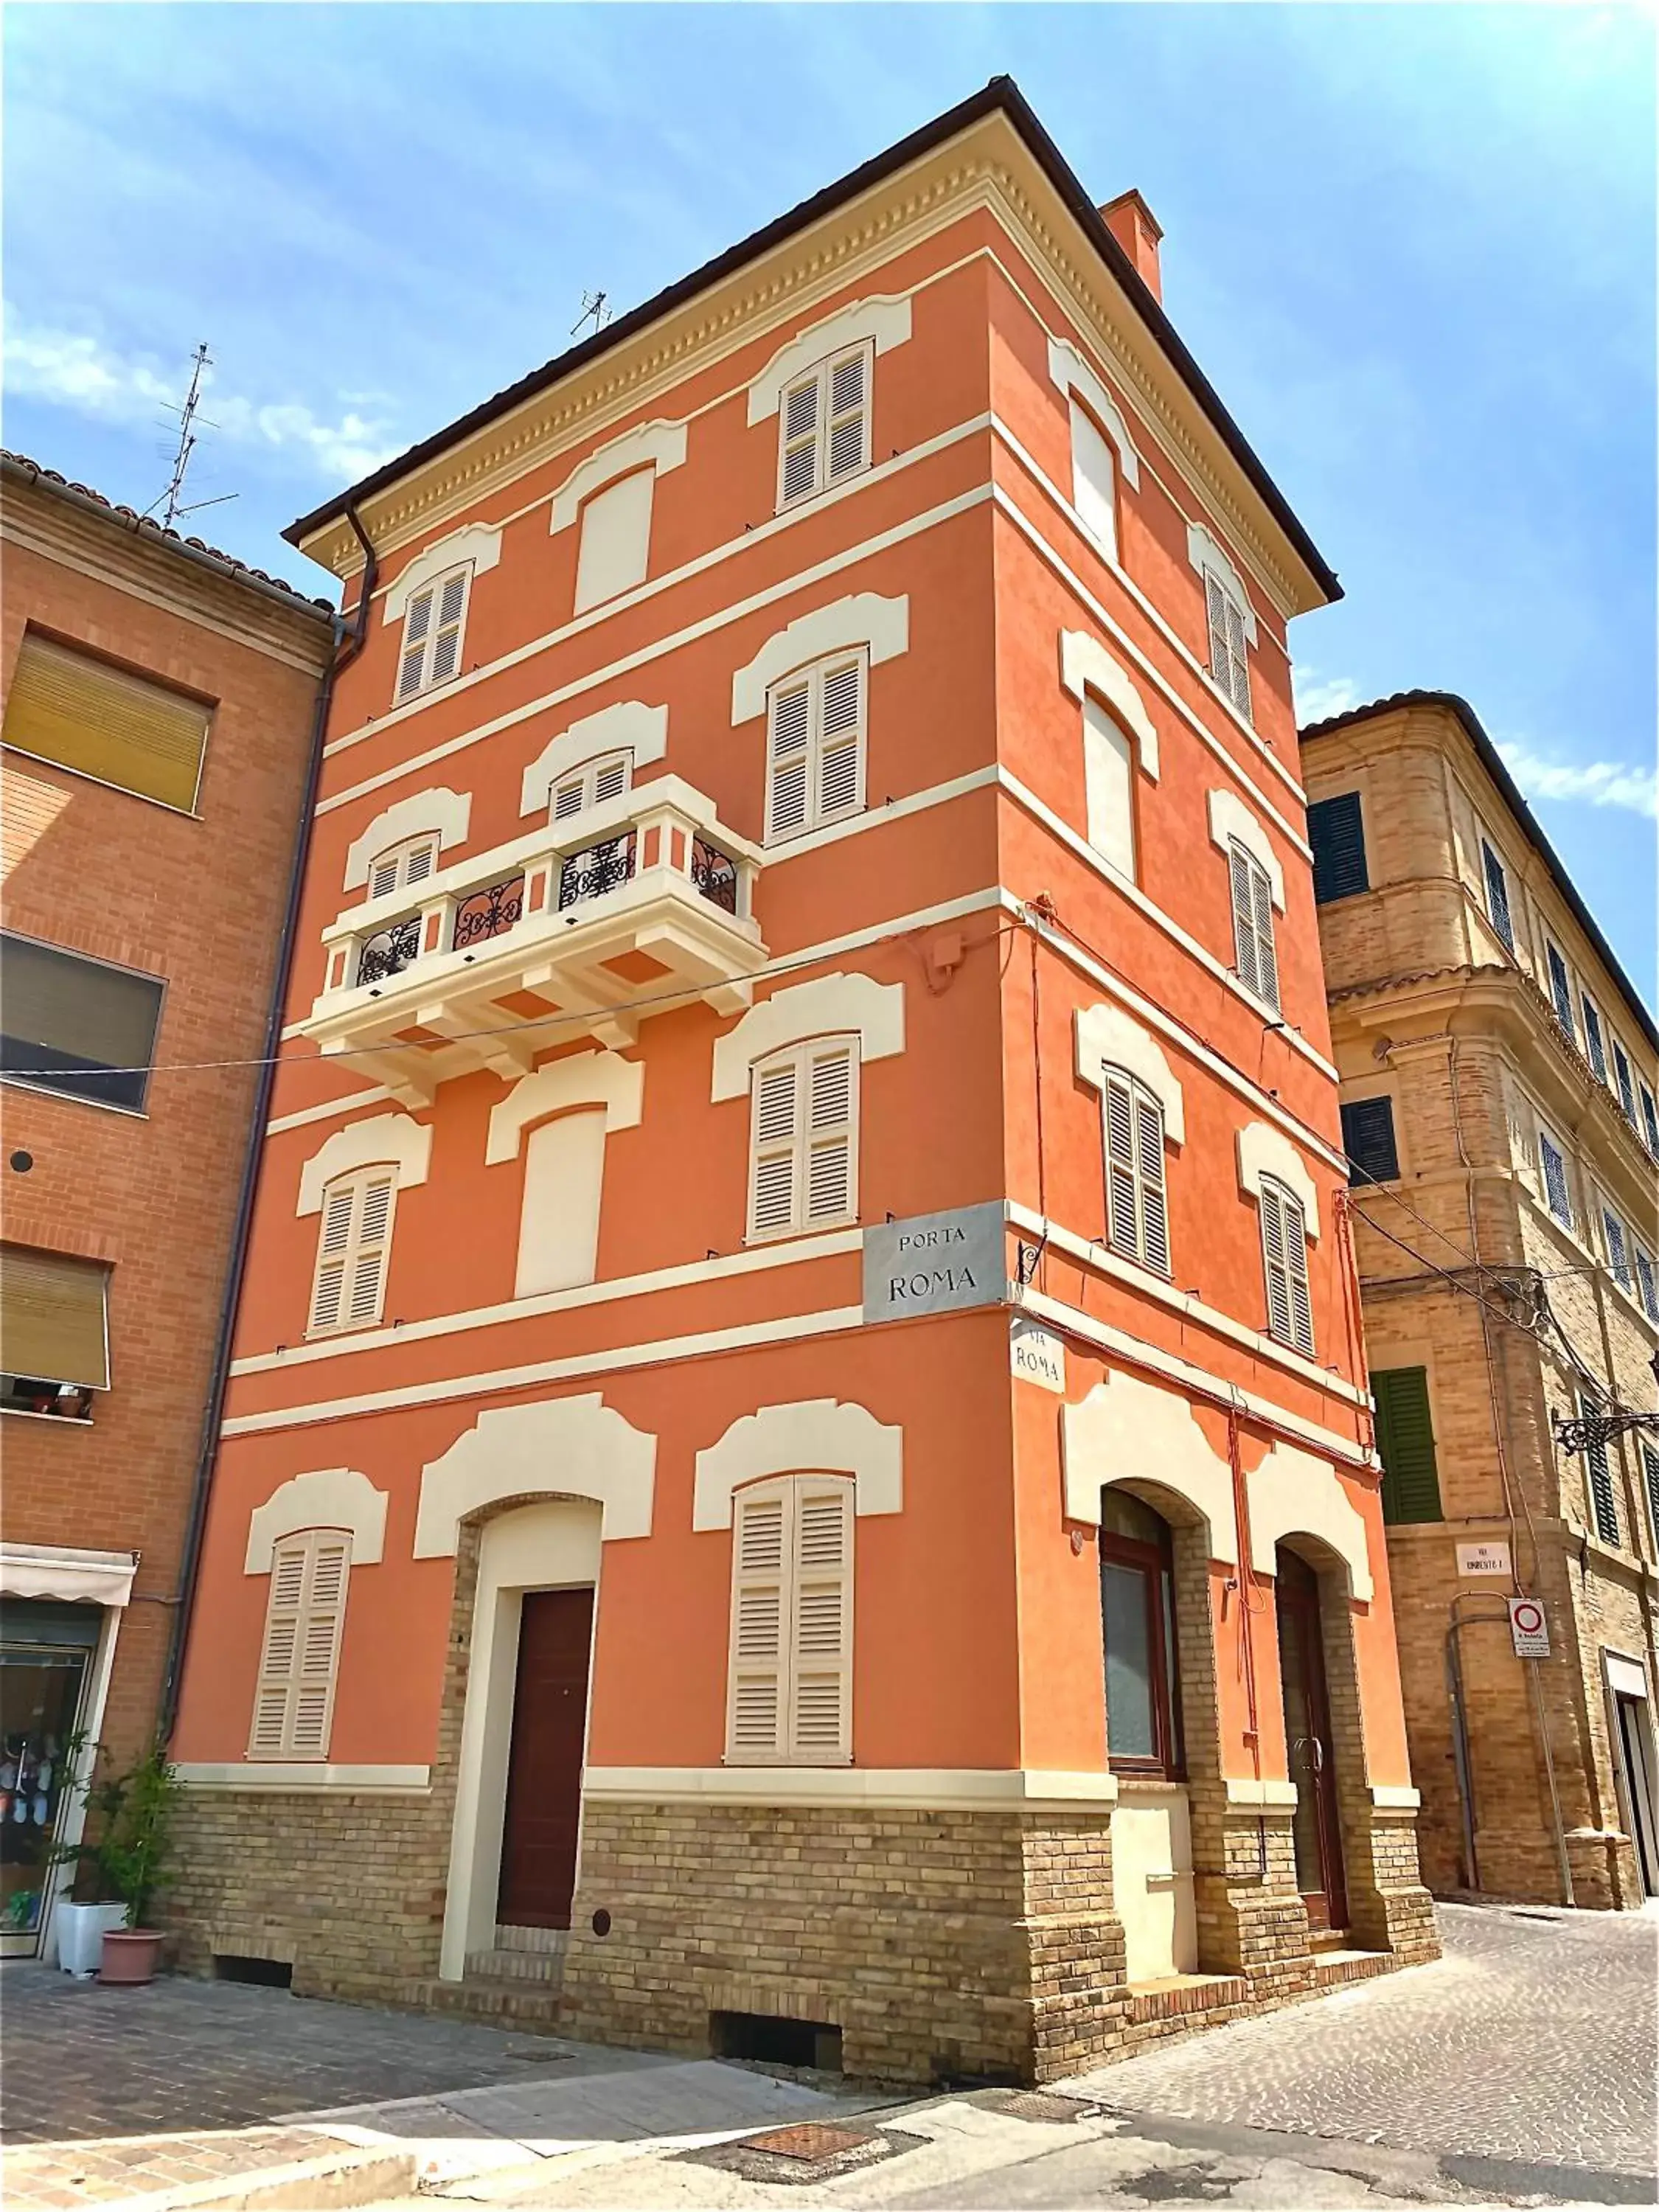 Property Building in B&B Terrazza Sul Borgo